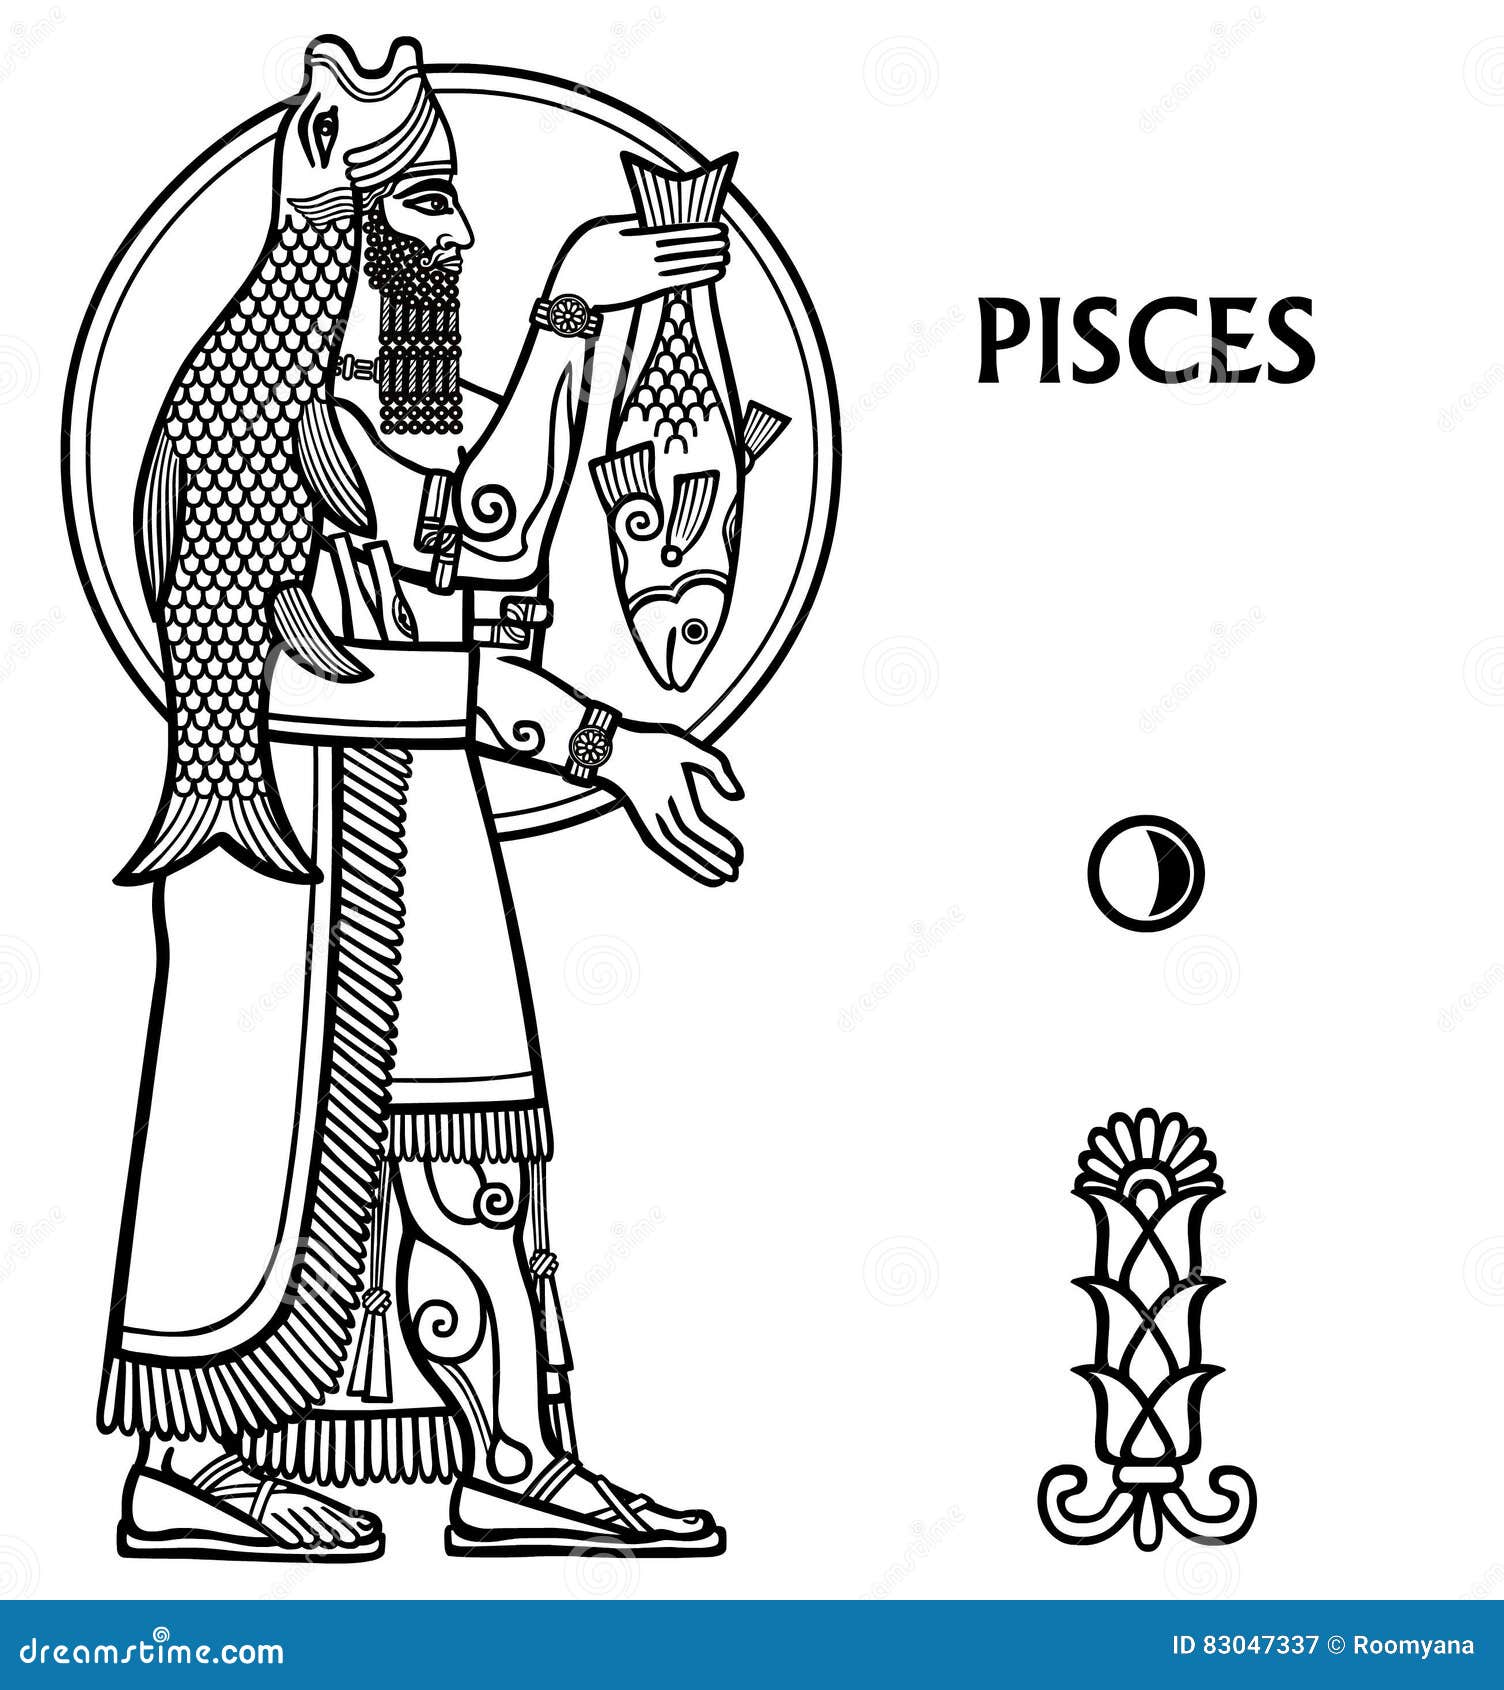 zodiac-sign-pisces-full-growth-vector-illustration-black-white-drawing-isolated-white-motives-sumerian-art-83047337.jpg